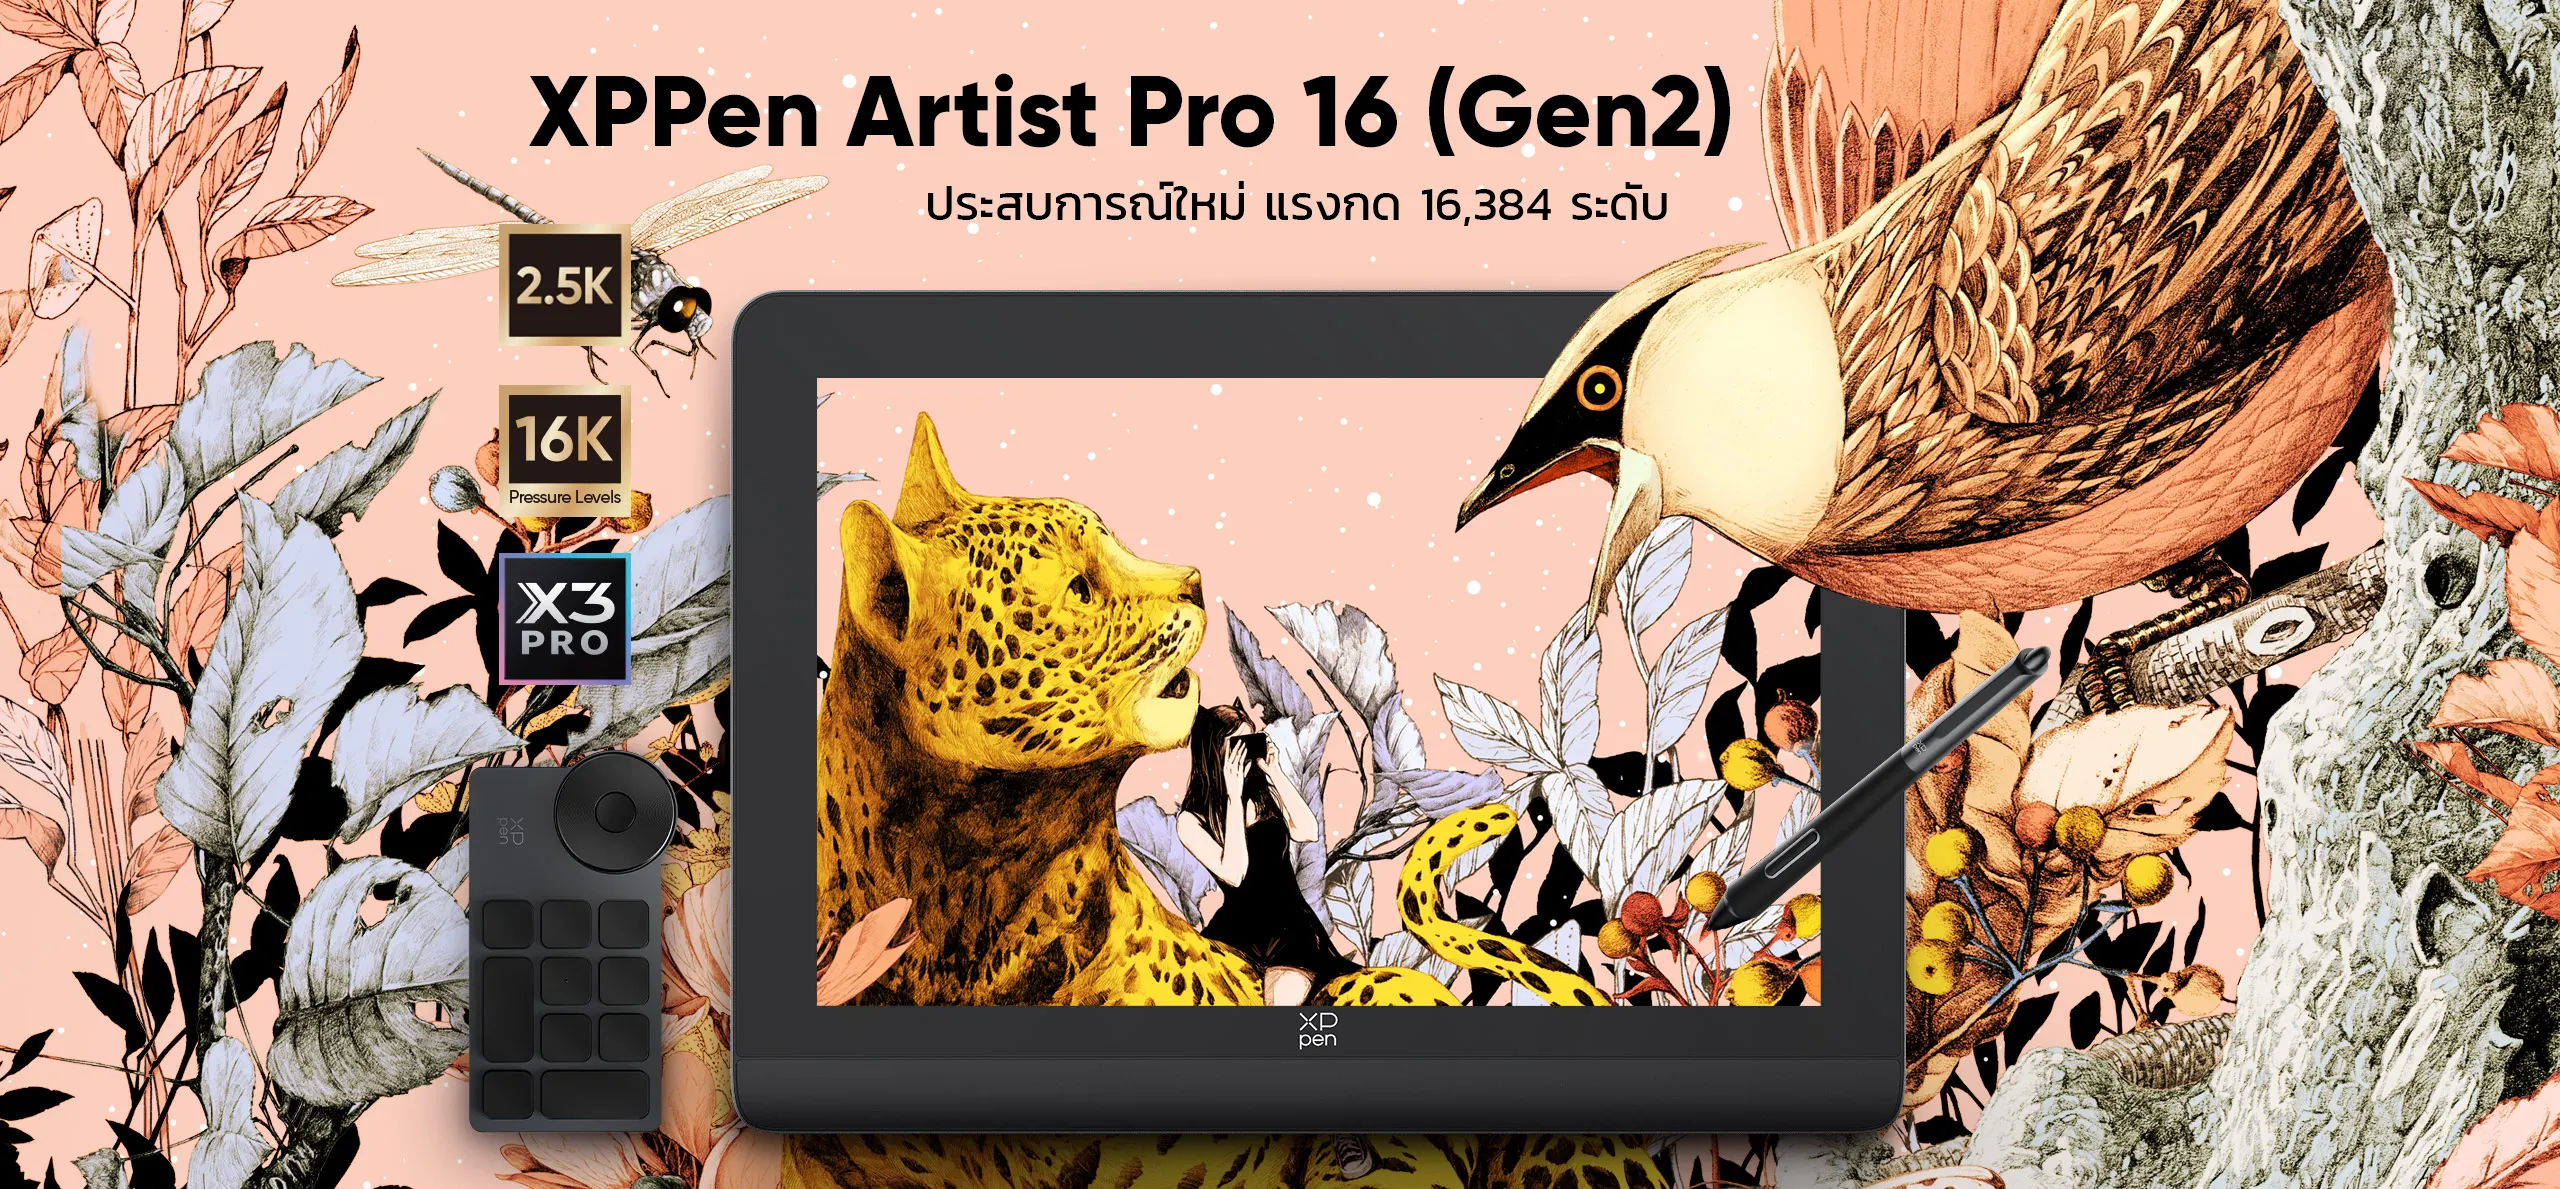 Artist Pro 16 (Gen 2)